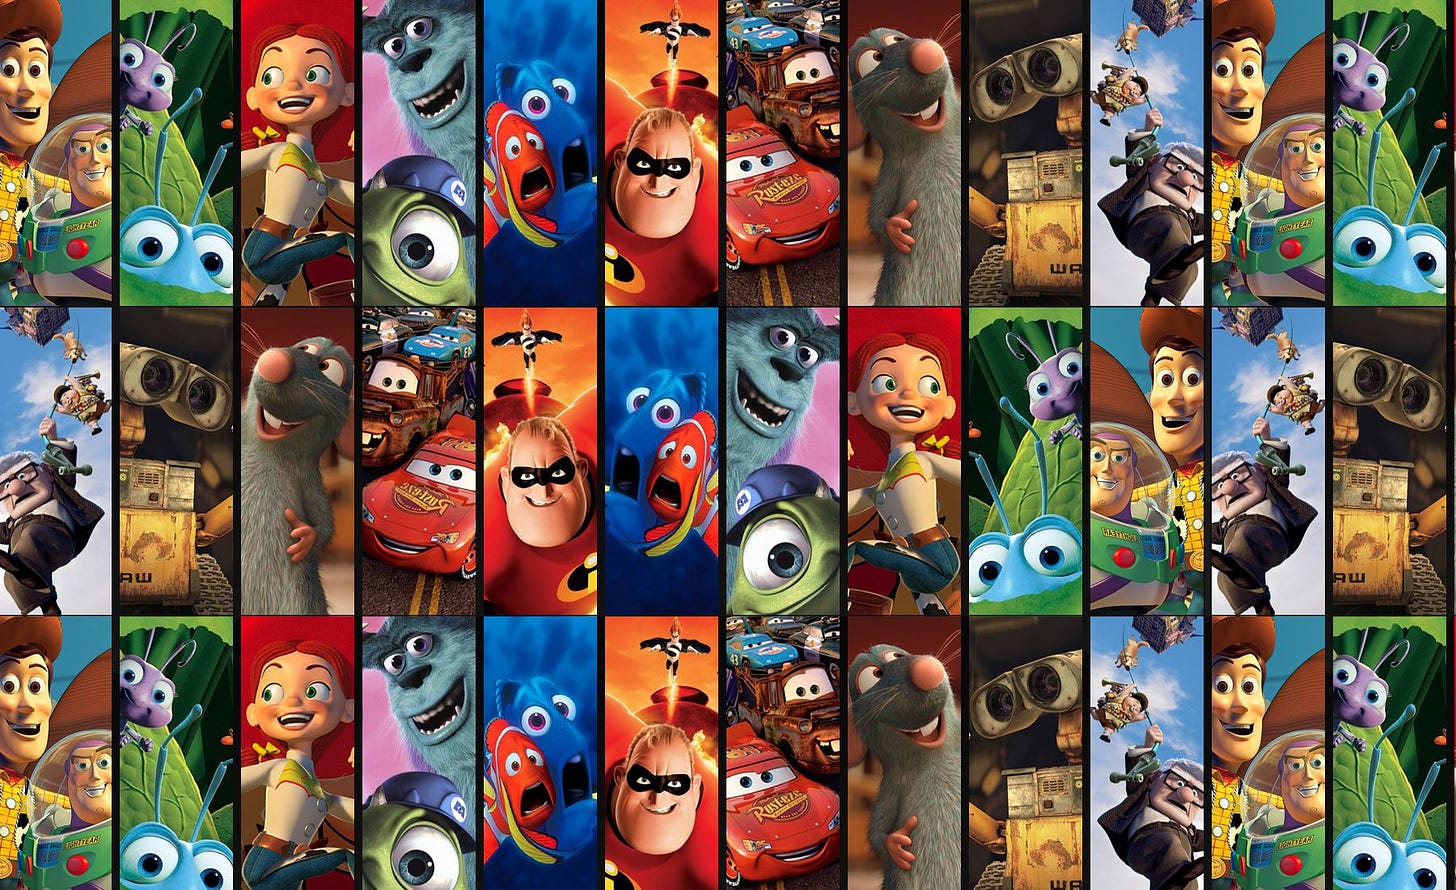 Pixar movies, Pixar films, Disney pixar movies